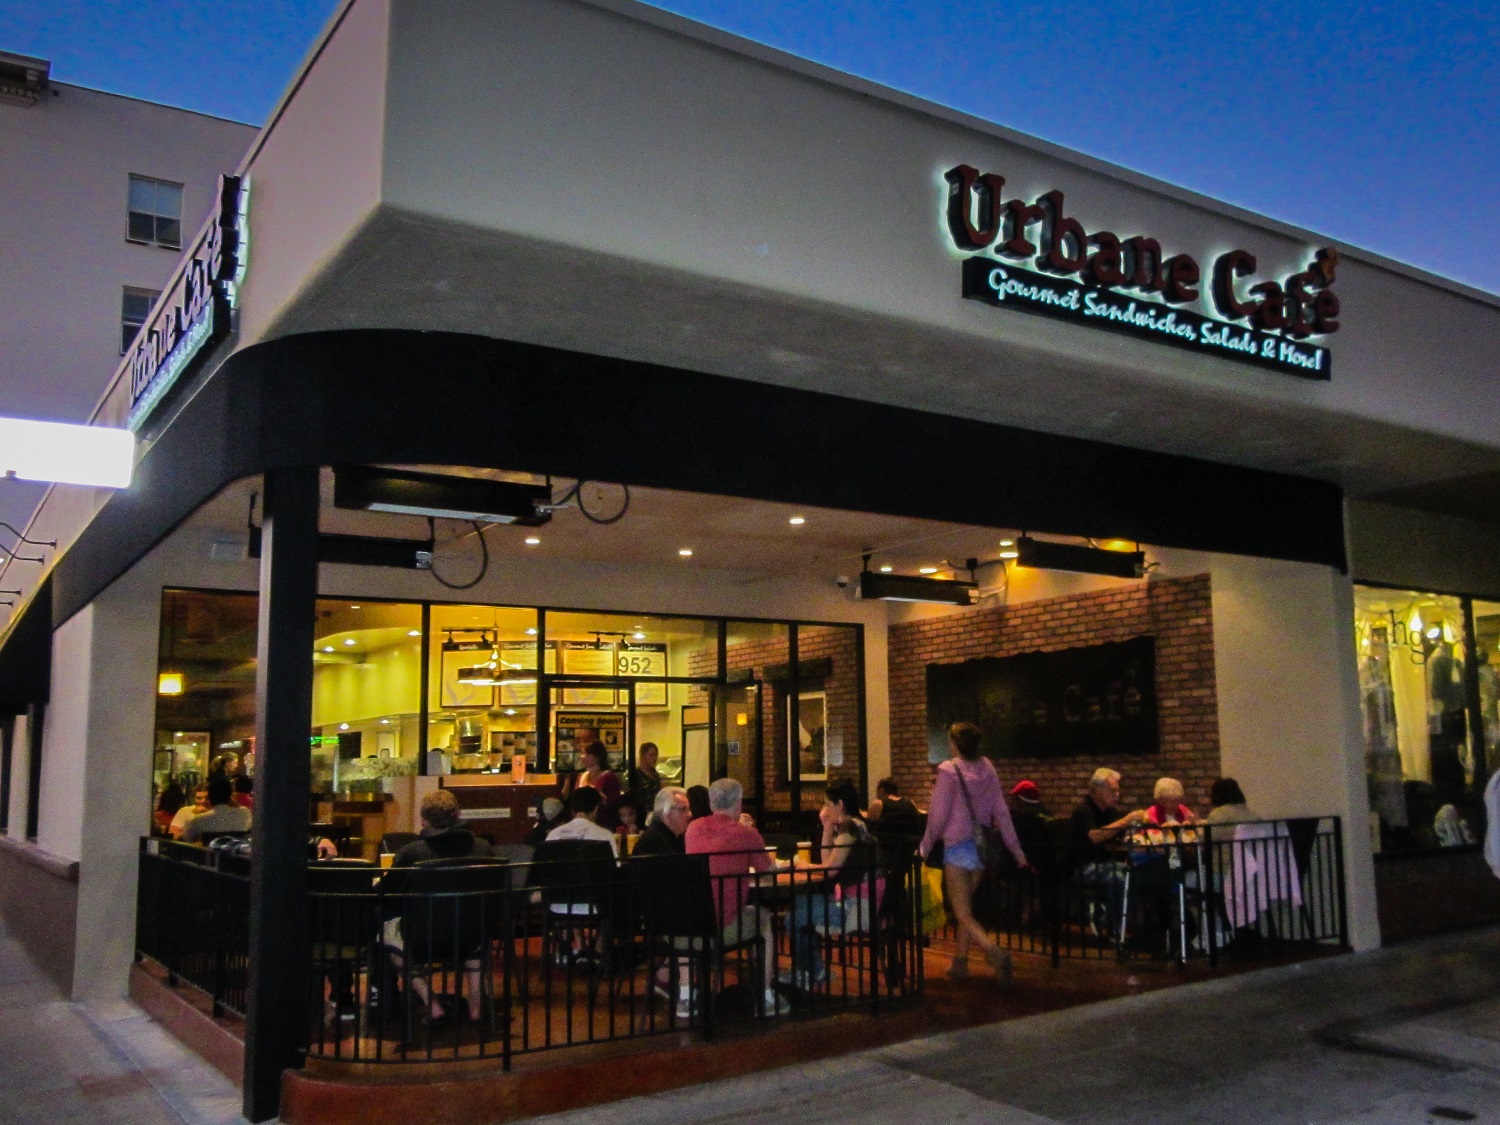 Urbane Cafe San Luis Obispo